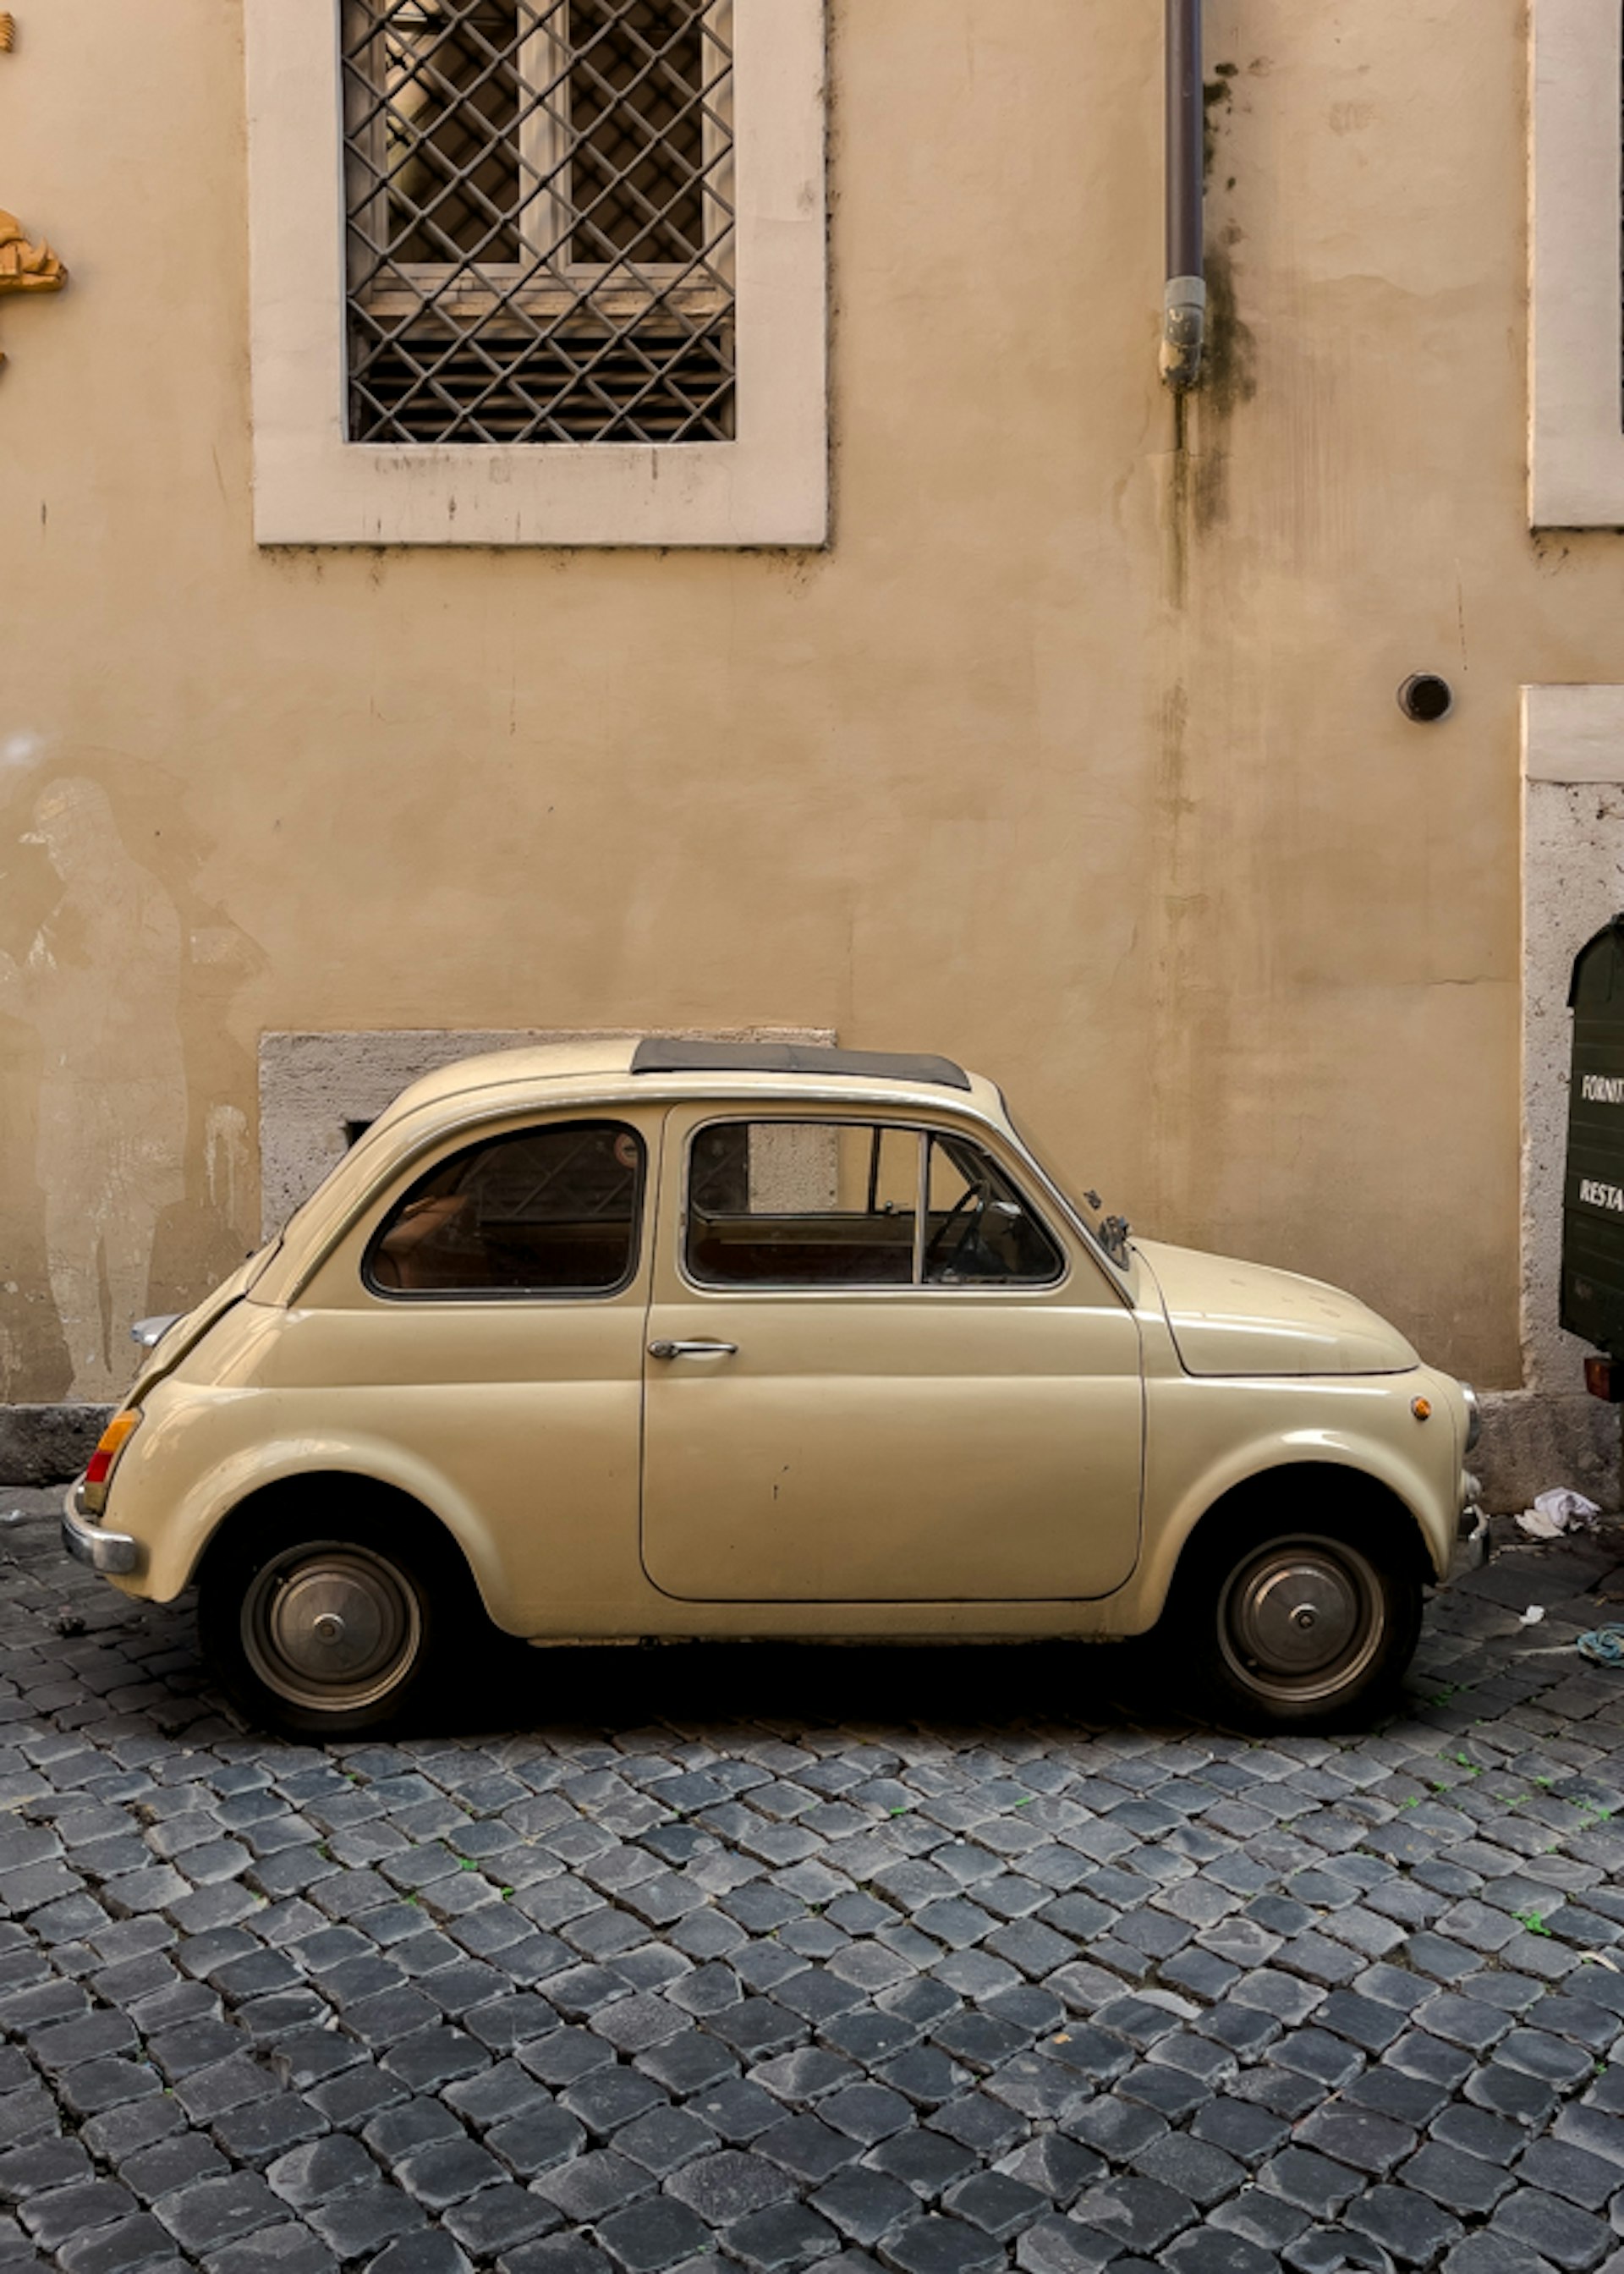 Old Car in Rome